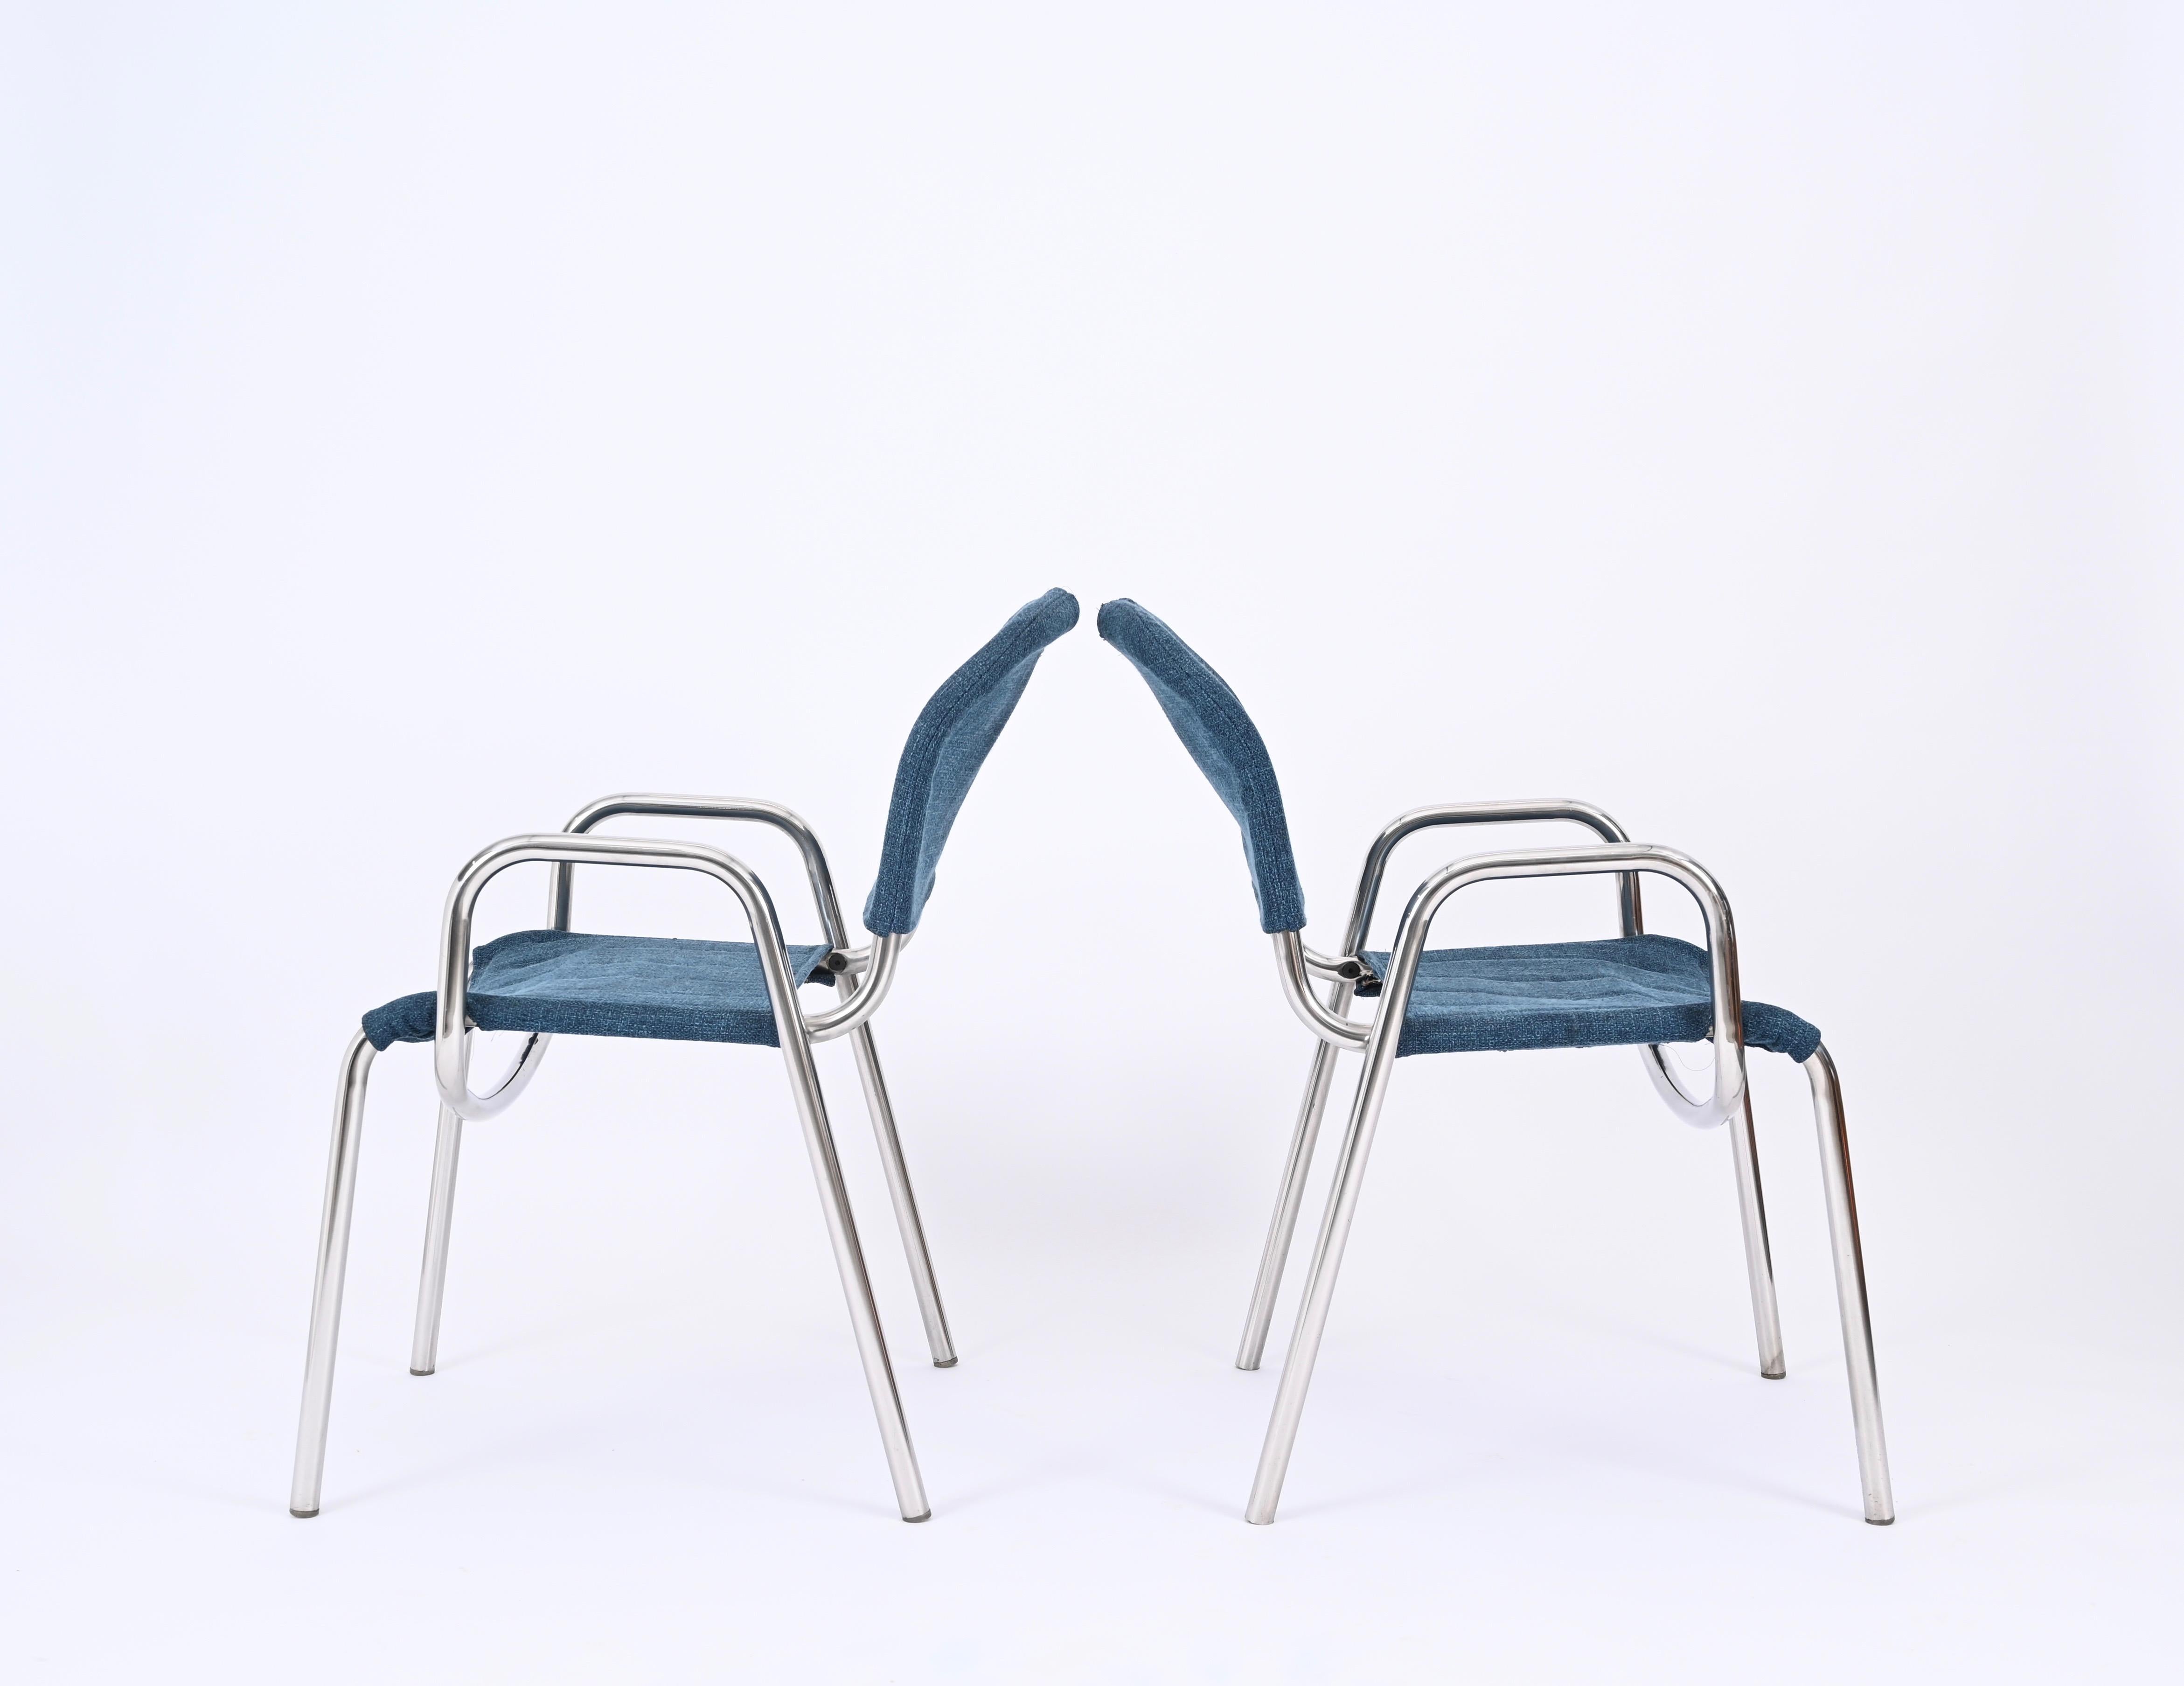 Pair of Blue Castiglietta Dining Chairs by Castiglioni for Zanotta, Italy 1960s For Sale 5